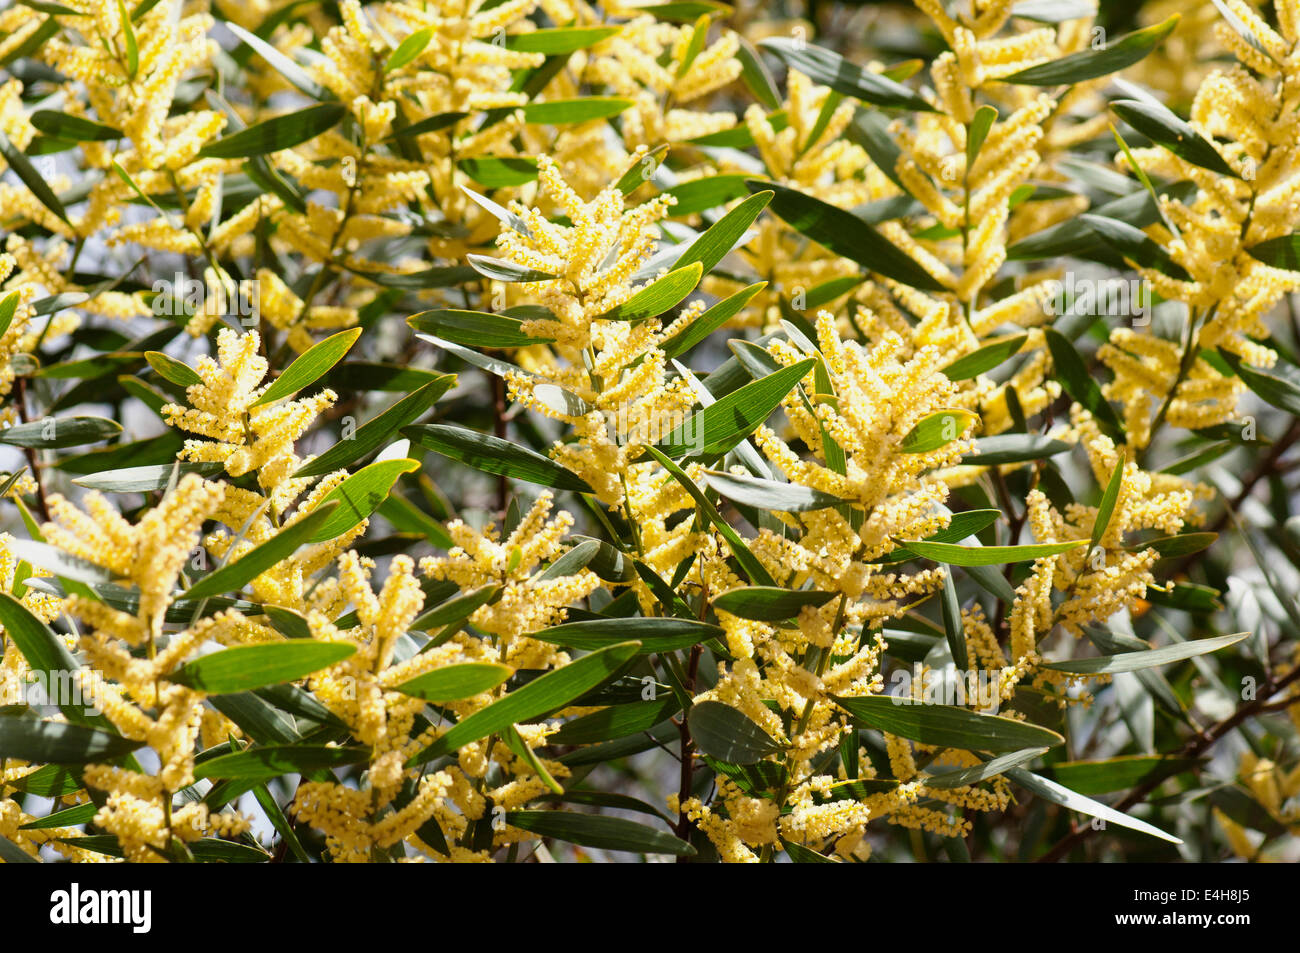 Wattle, Golden wattle, Acacia longifolia. Stock Photo